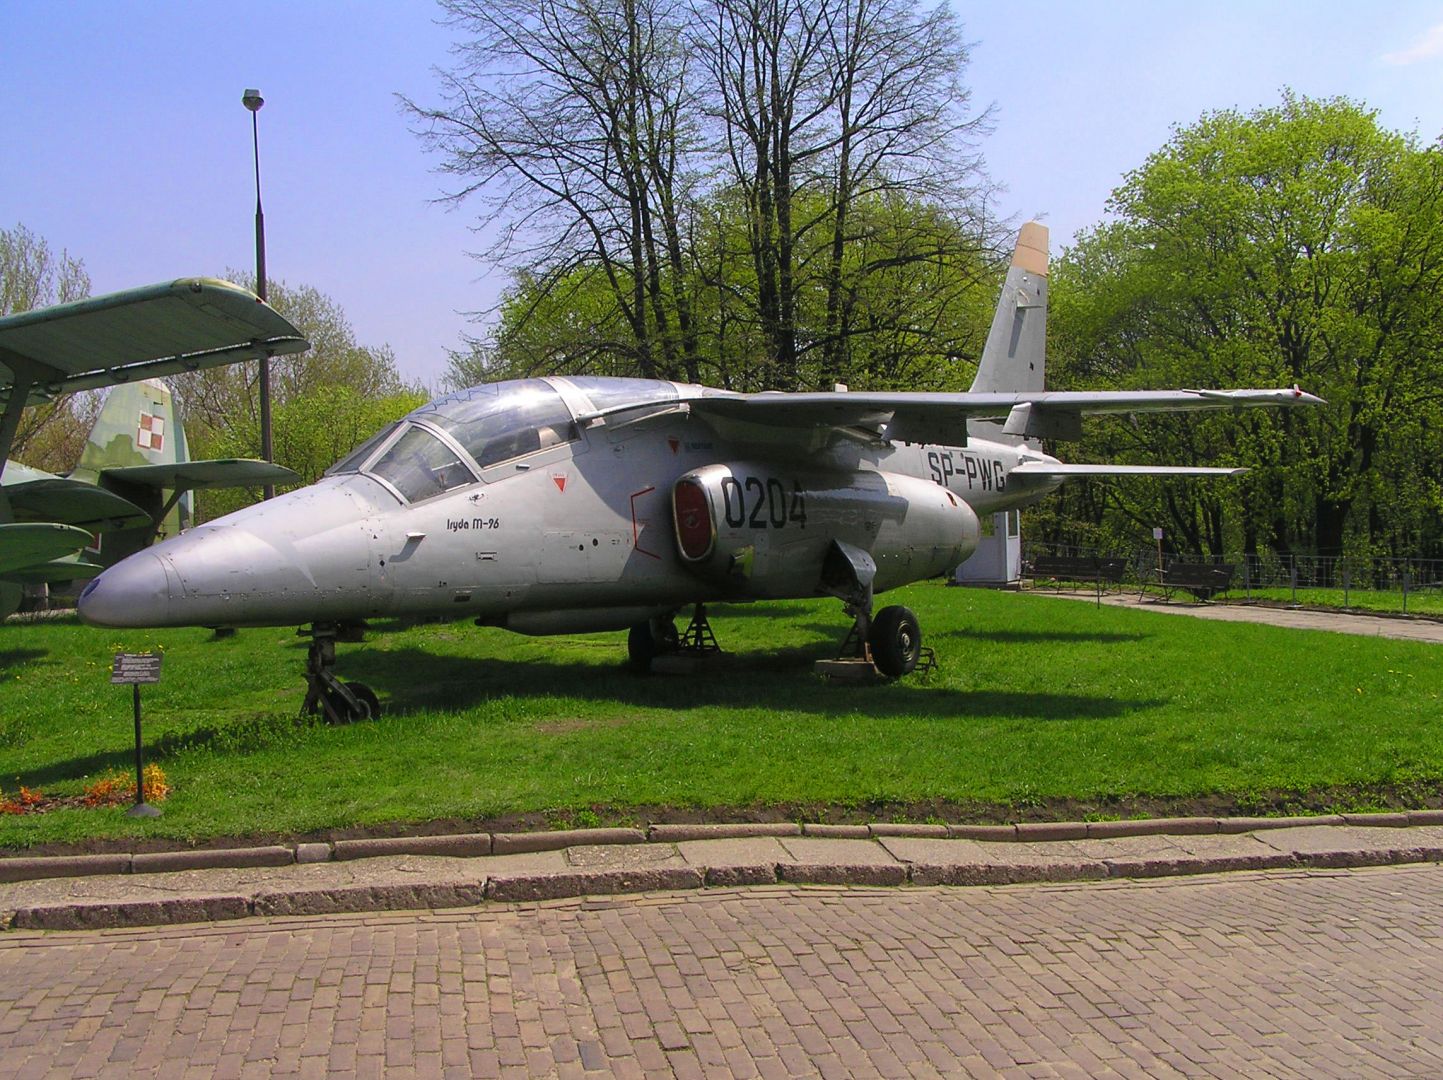 Polish Army Museum